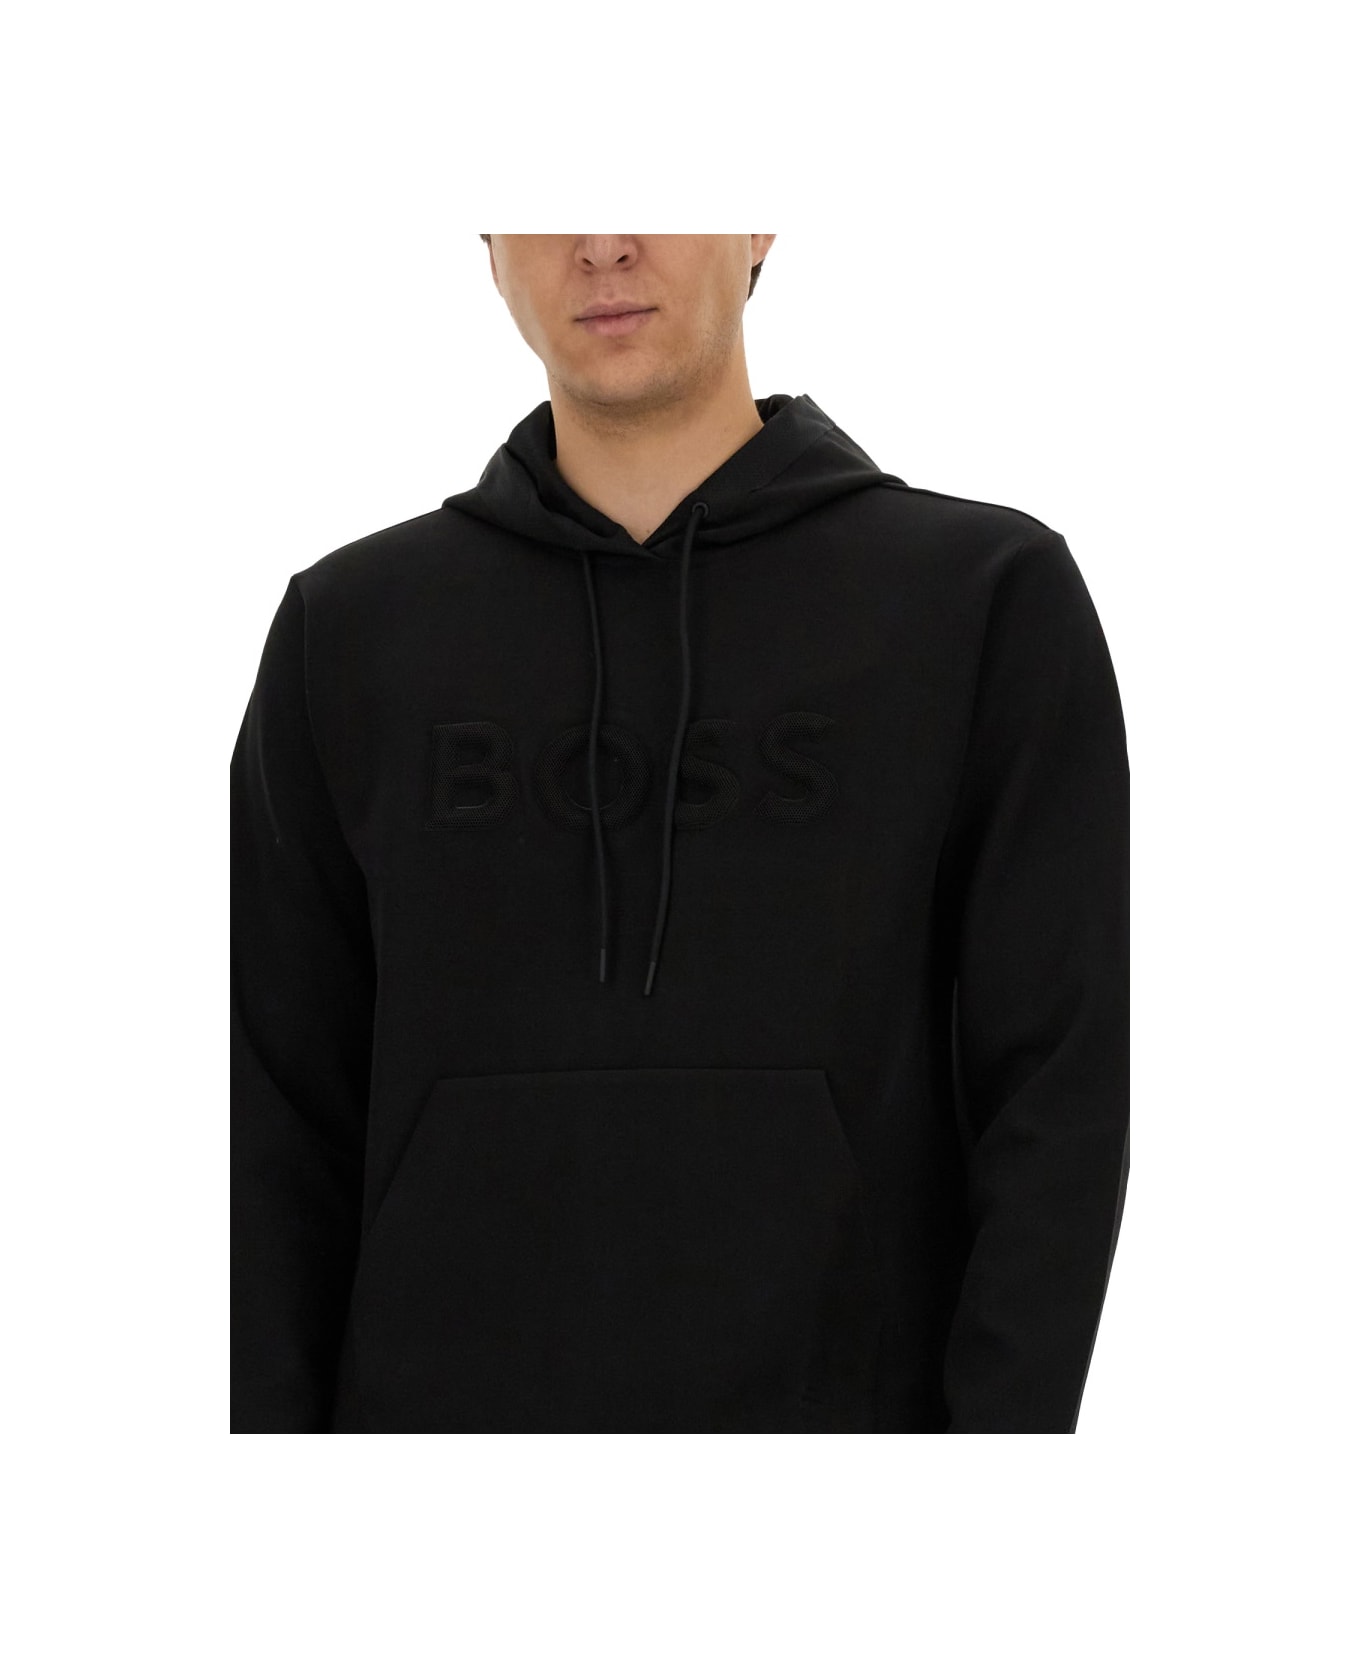 Hugo Boss Sweatshirt With Logo - BLACK